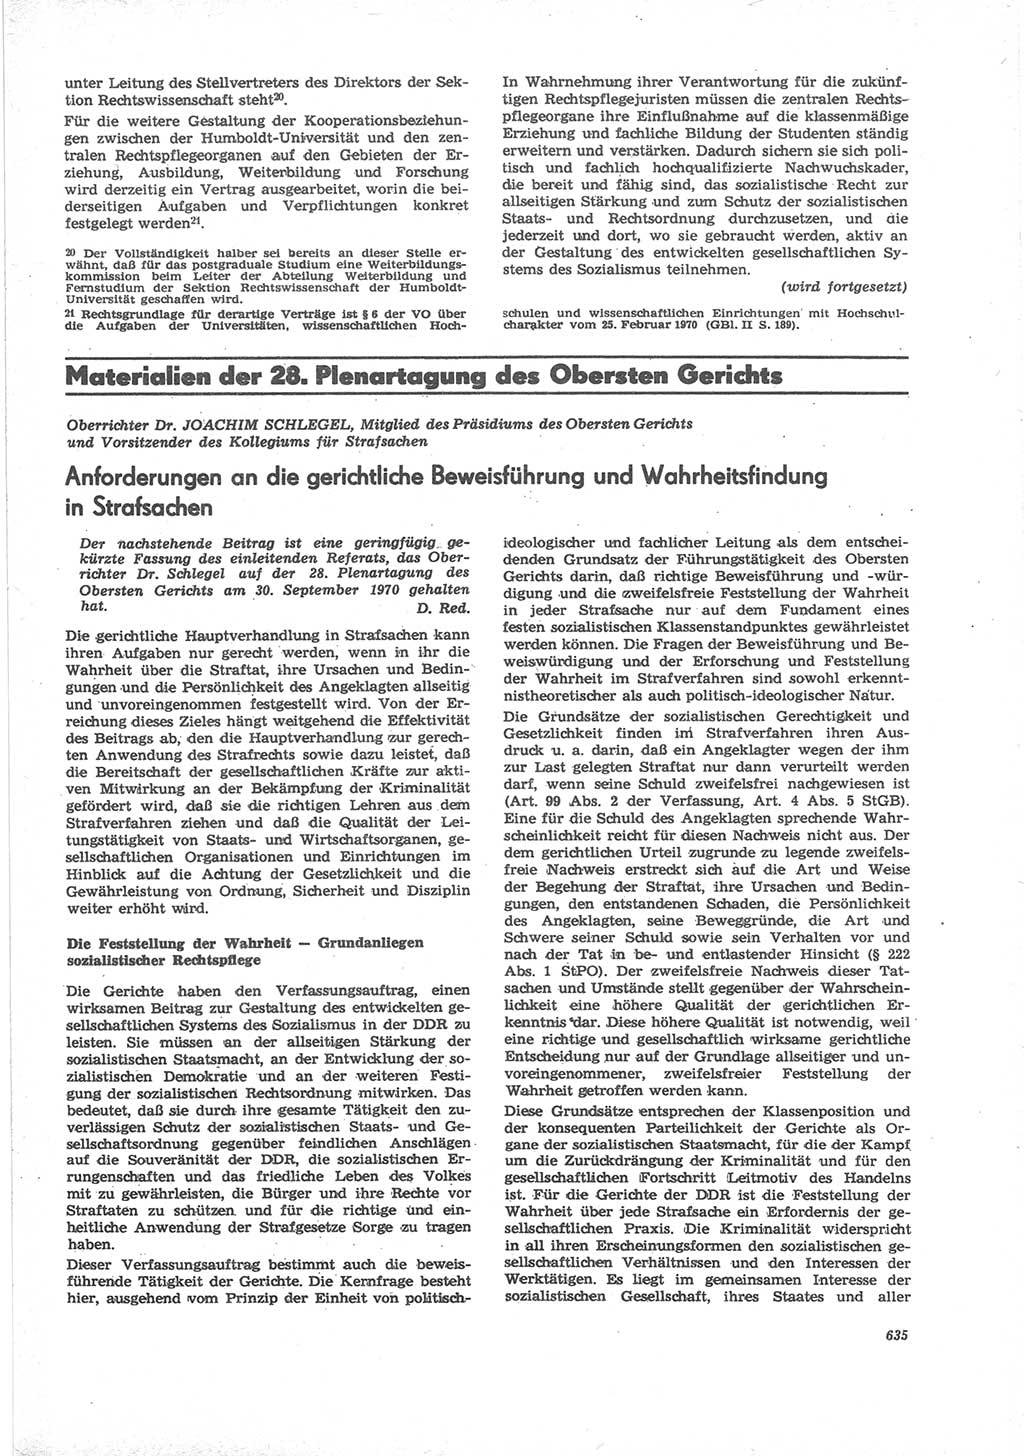 Neue Justiz (NJ), Zeitschrift für Recht und Rechtswissenschaft [Deutsche Demokratische Republik (DDR)], 24. Jahrgang 1970, Seite 635 (NJ DDR 1970, S. 635)